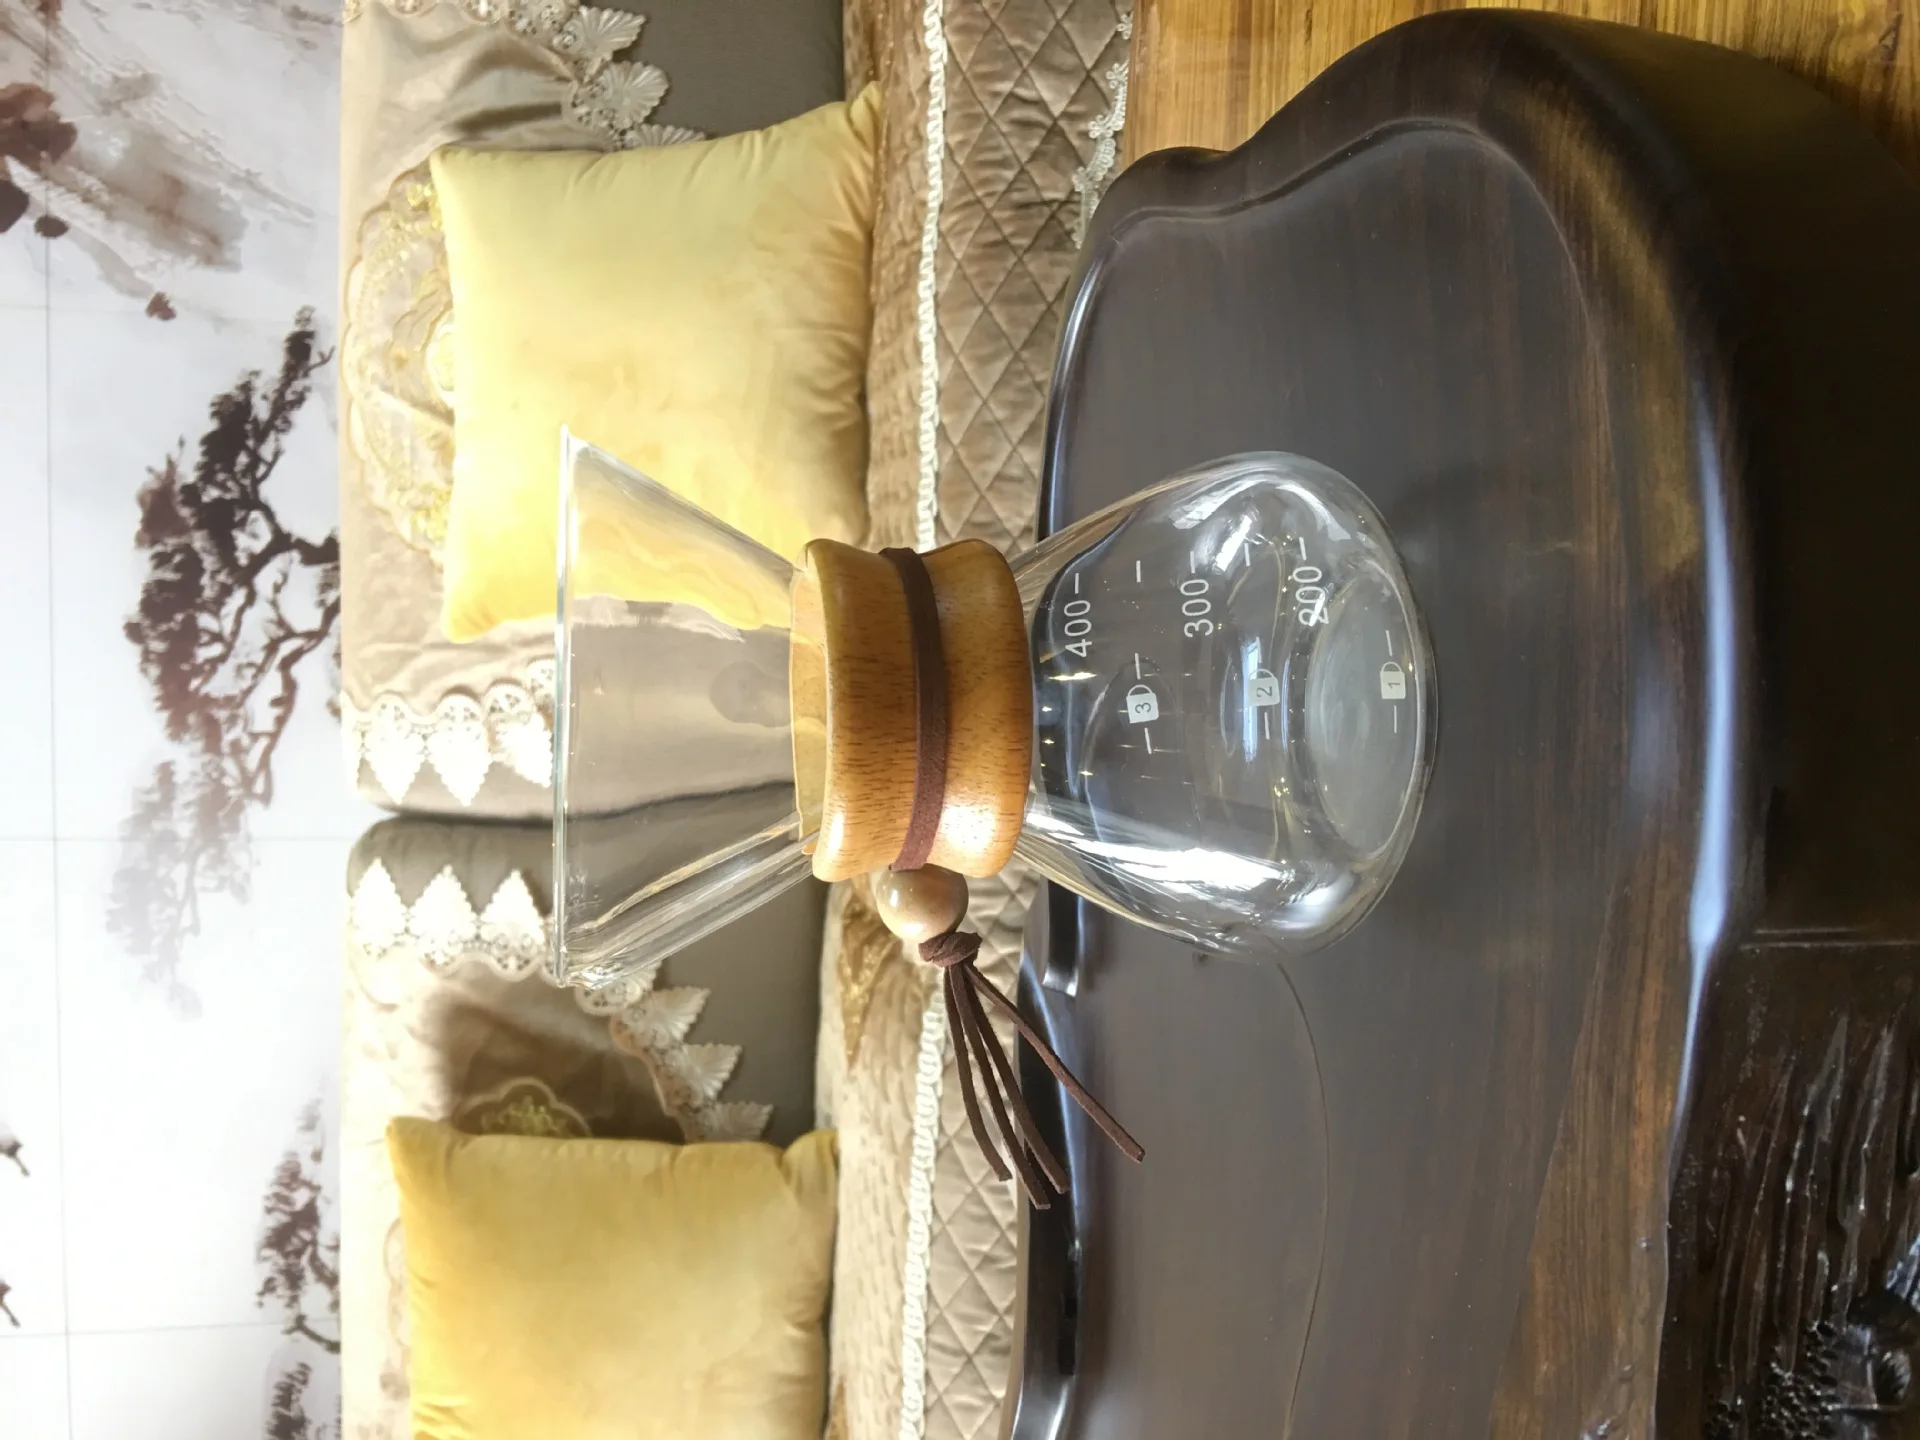 Производители поставляют боросиликатное стекло Кофеварка ручная чаша для умывания заварник для чая кофе горшок стеклянный чайник настраиваемый